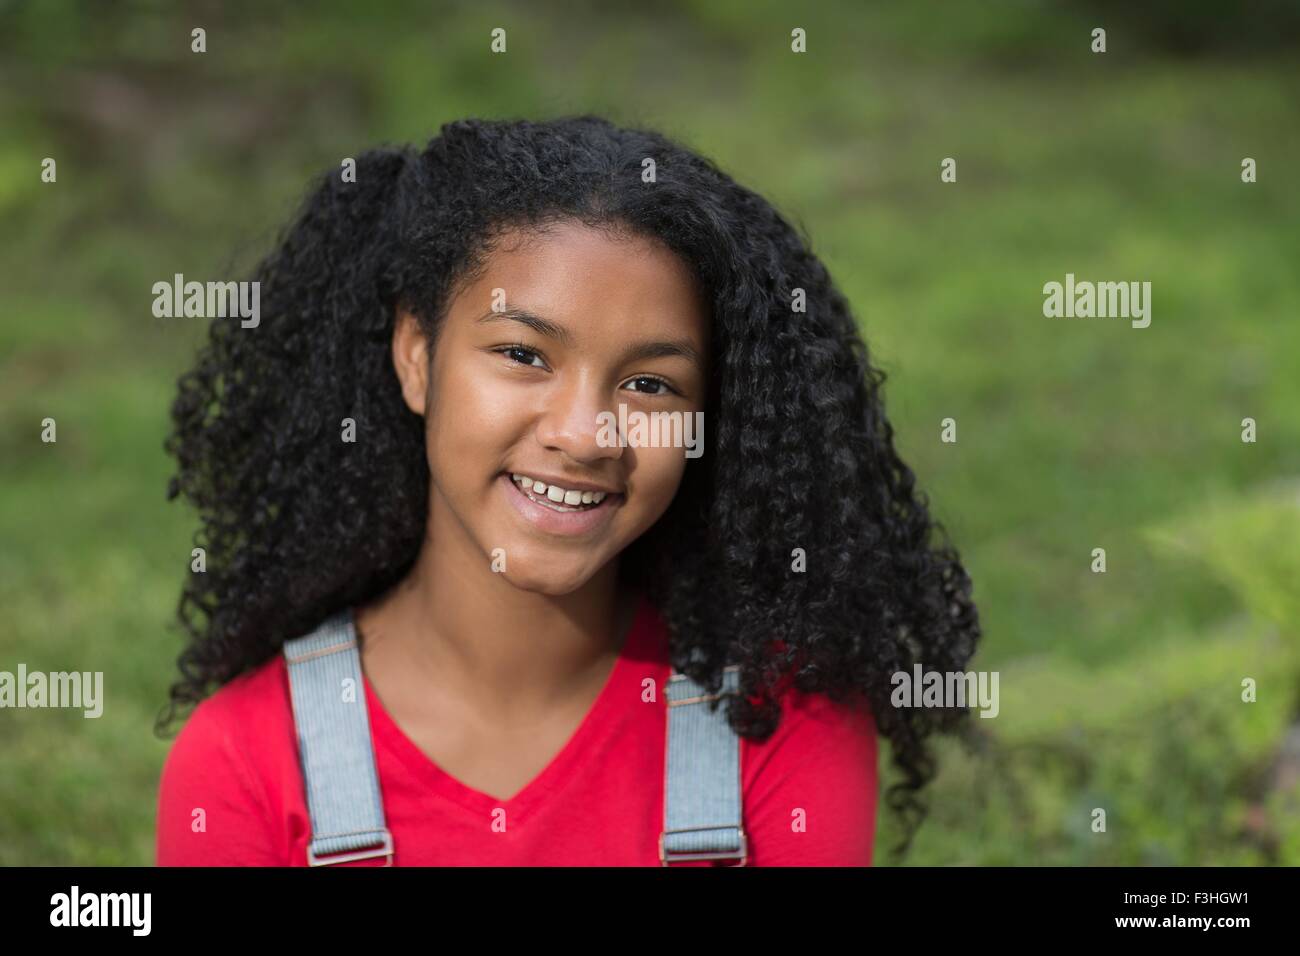 Portrait de jeune fille avec des cheveux noirs frisés smiling at camera Banque D'Images